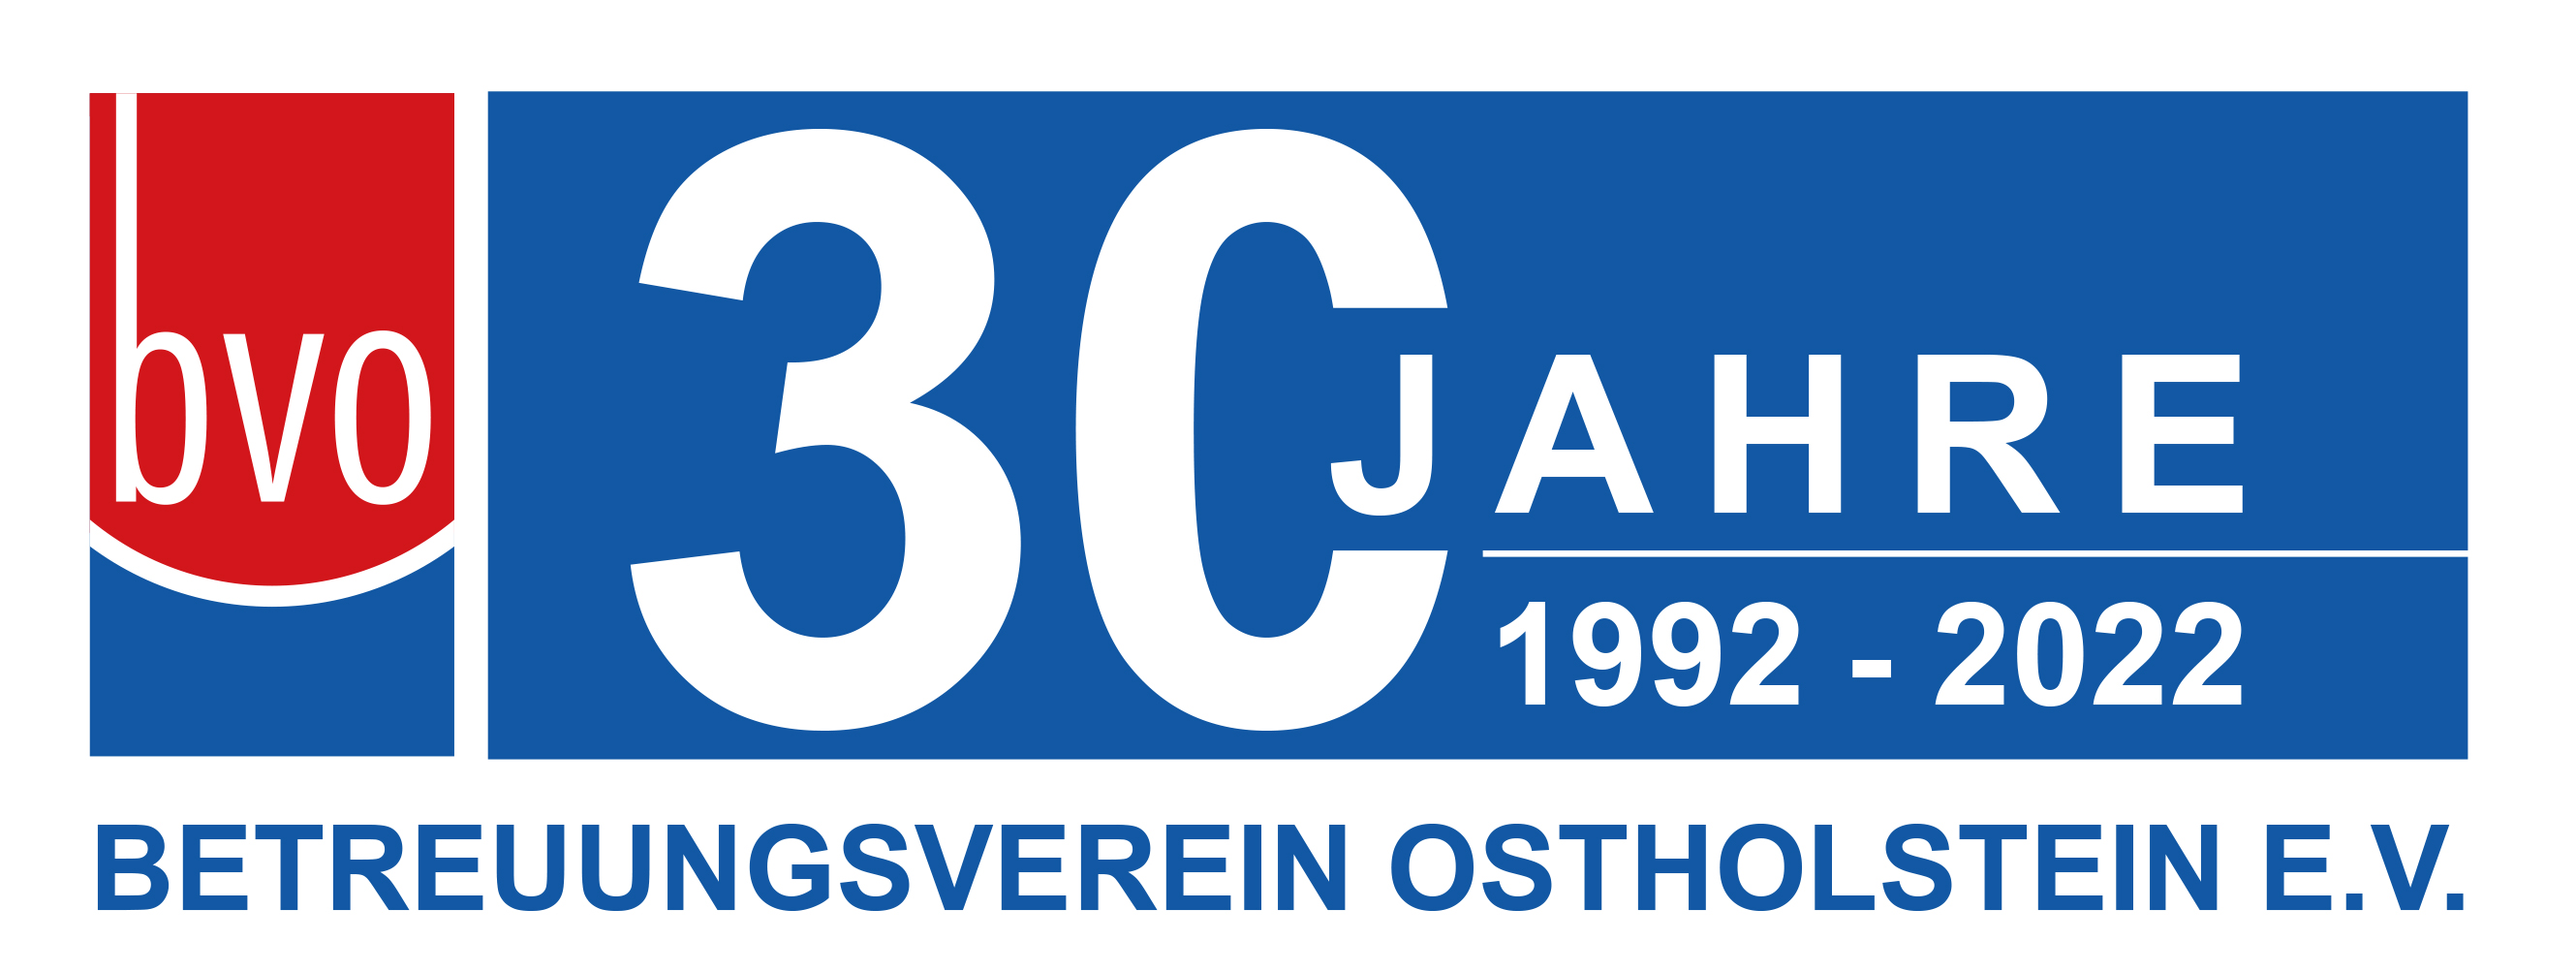 30jahre Logo